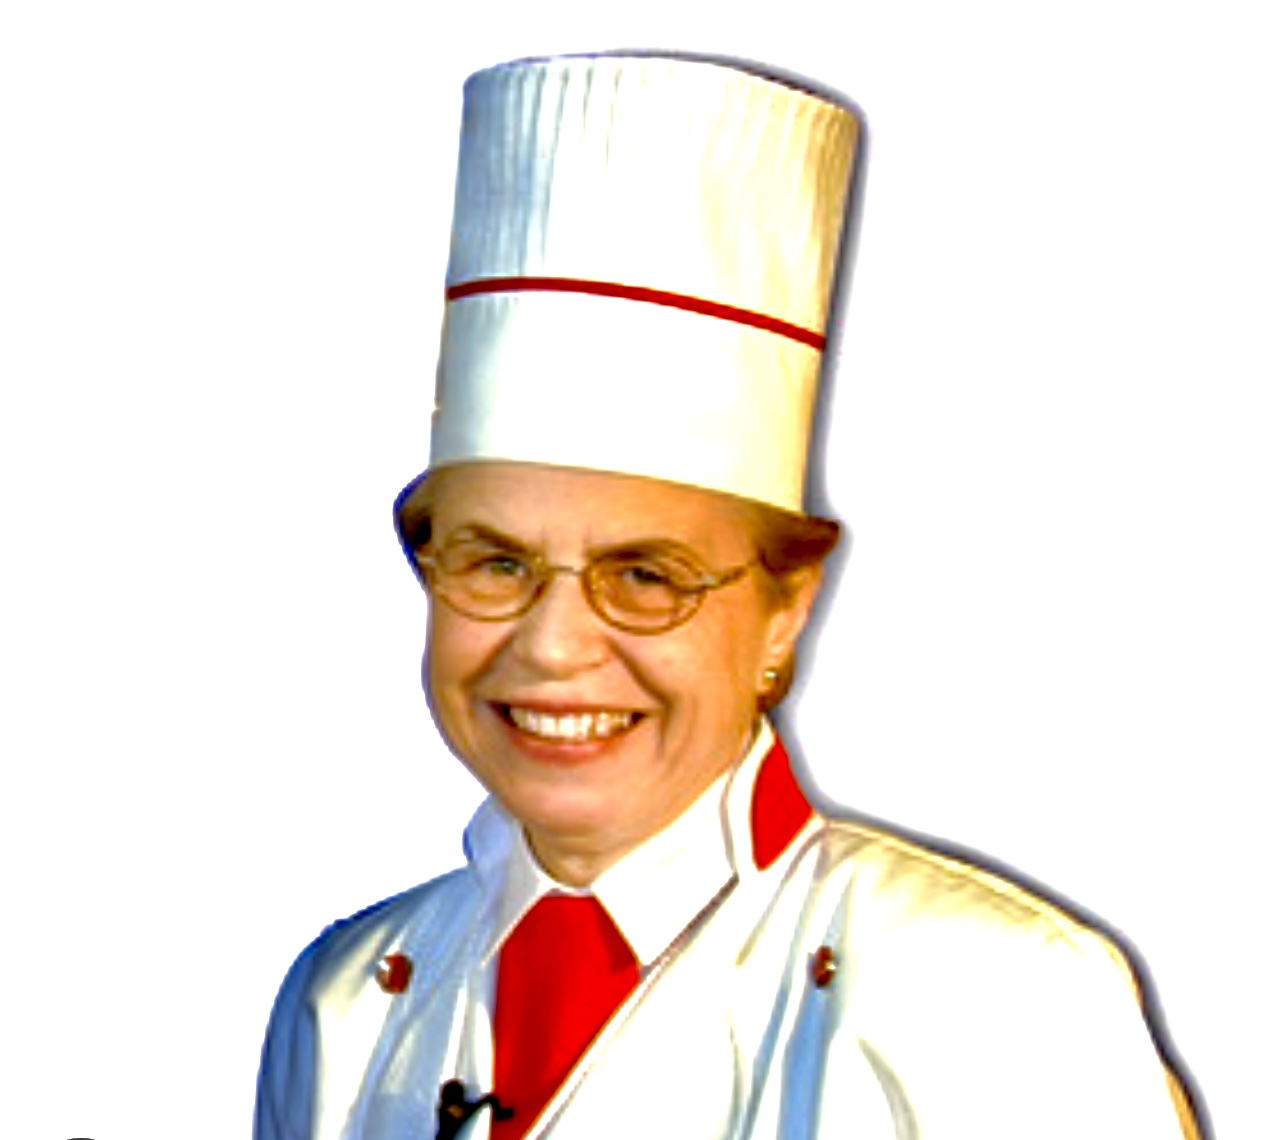 Une femme coiffée d'une toque blanche souriant tout en préparant des recettes.